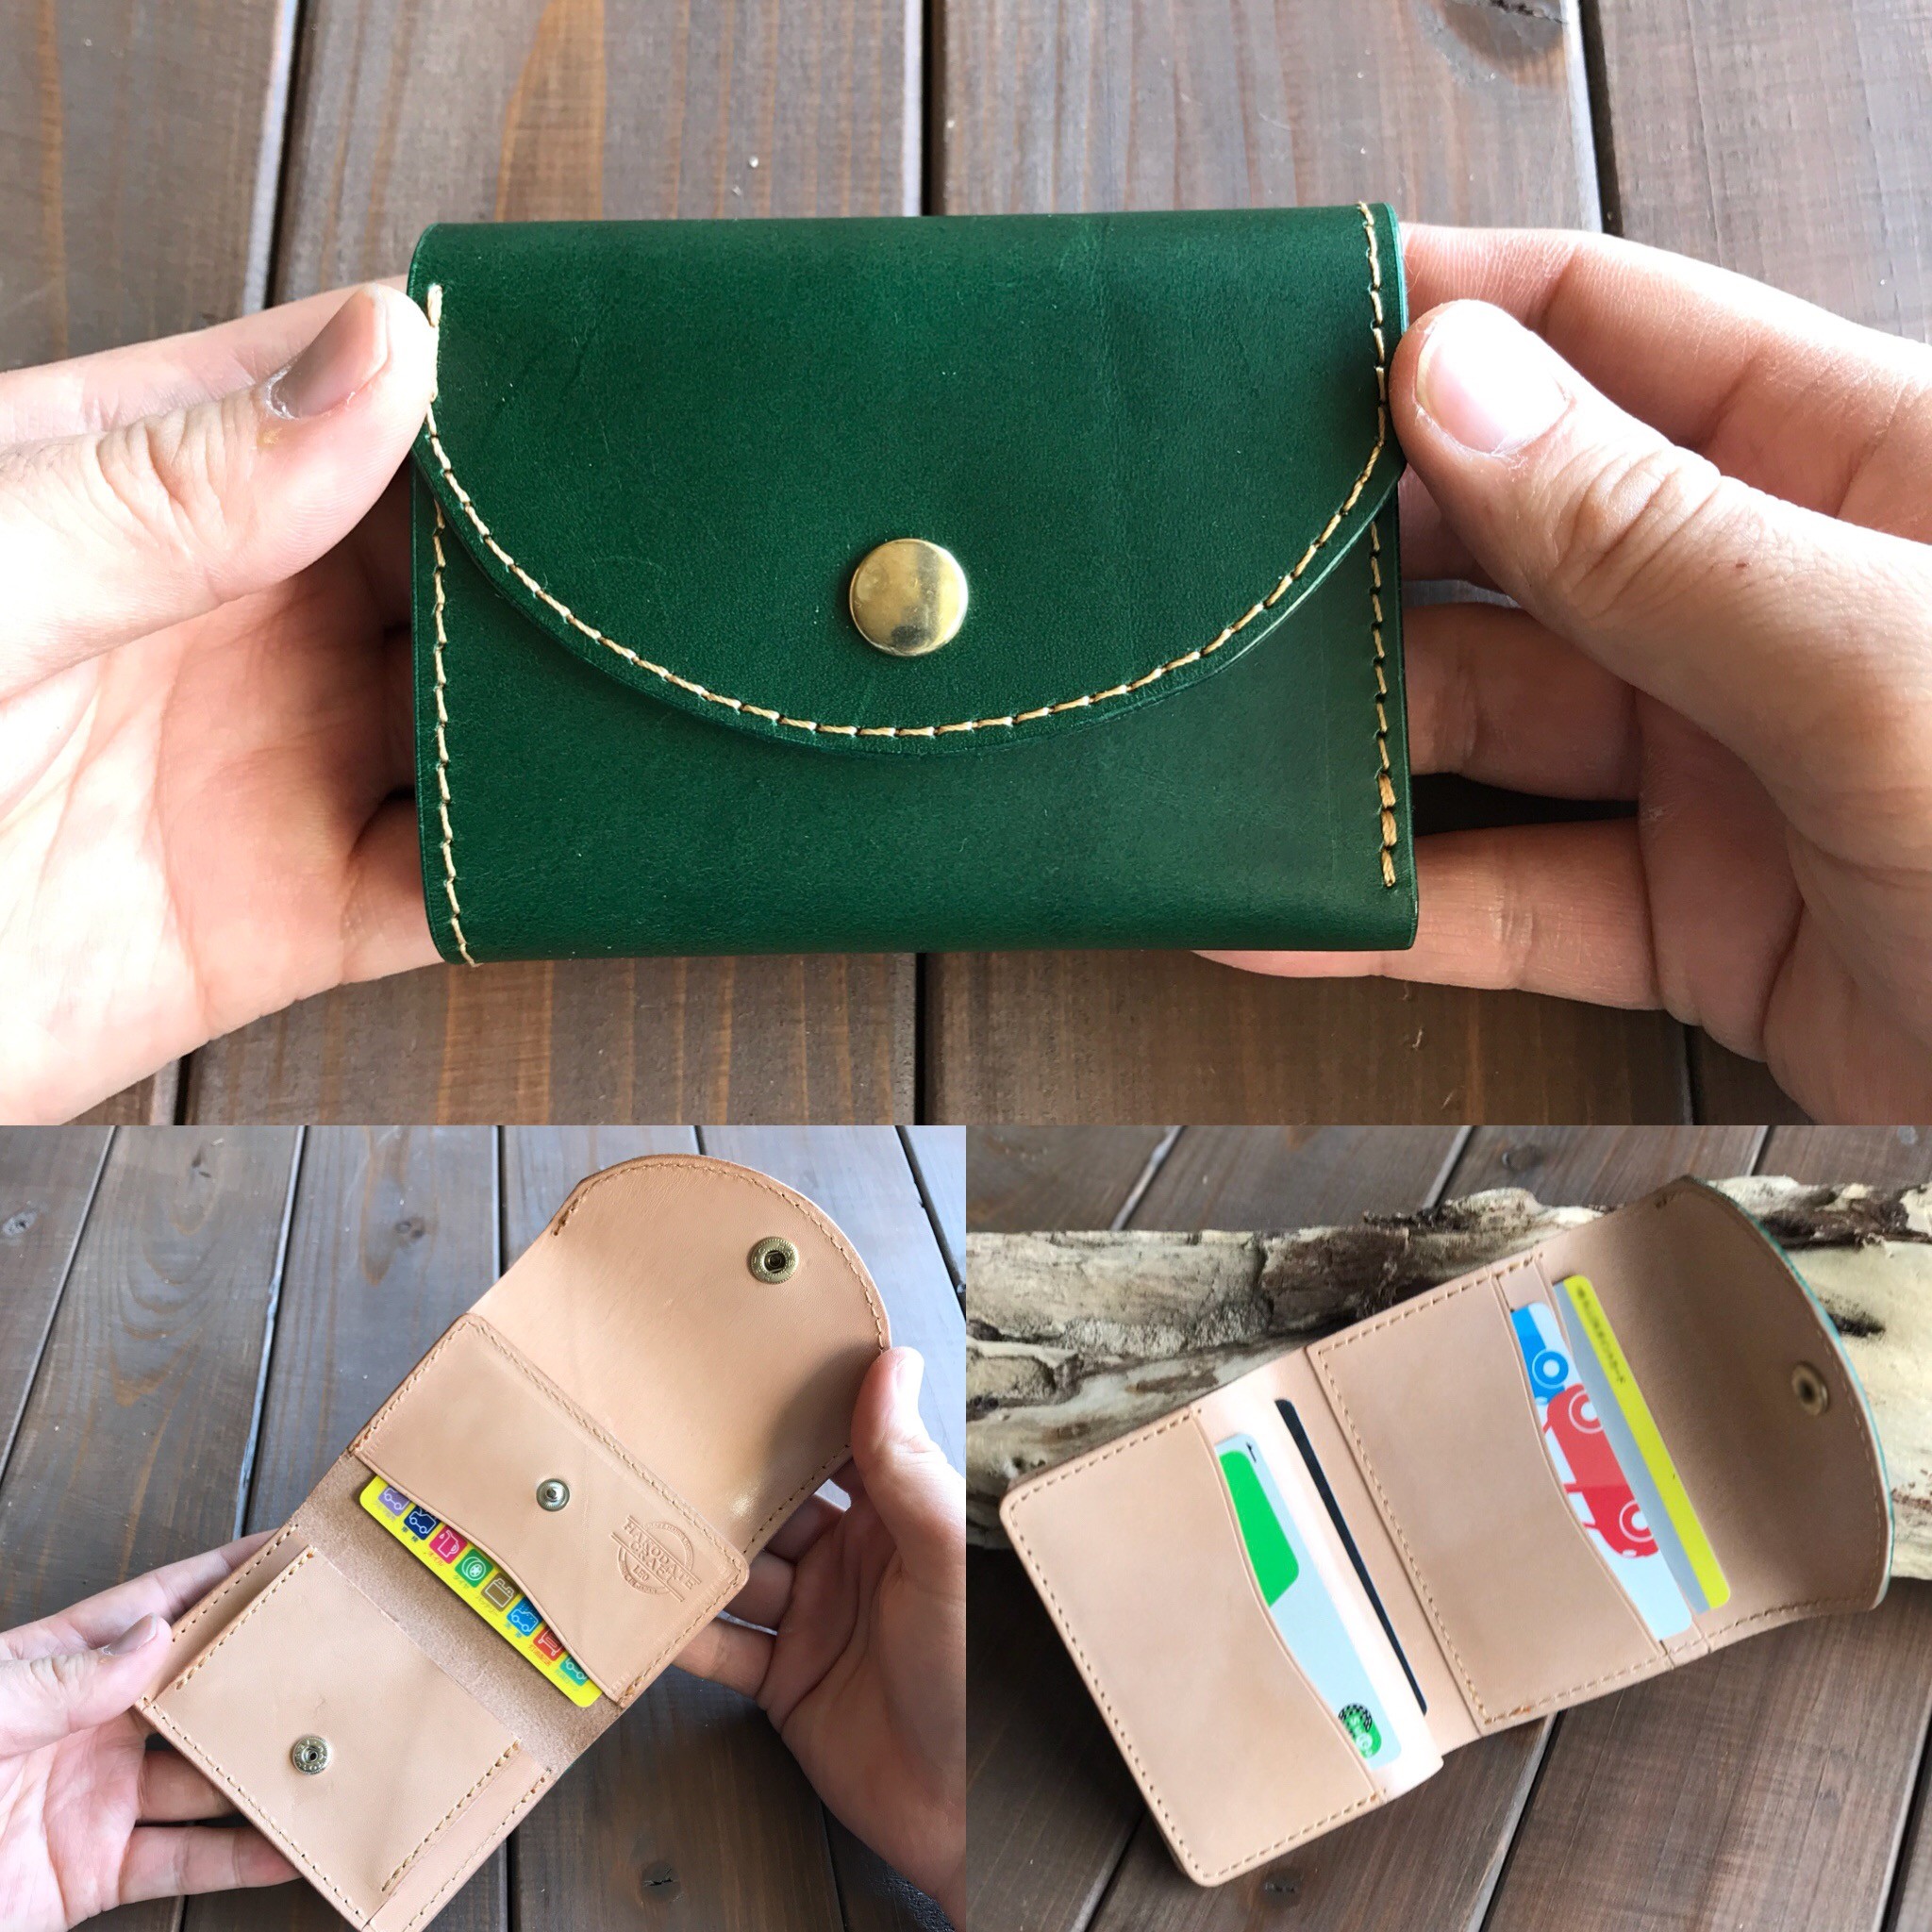 イタリアンレザーを使った緑色の二つ折り財布 送料無料 名入れ可